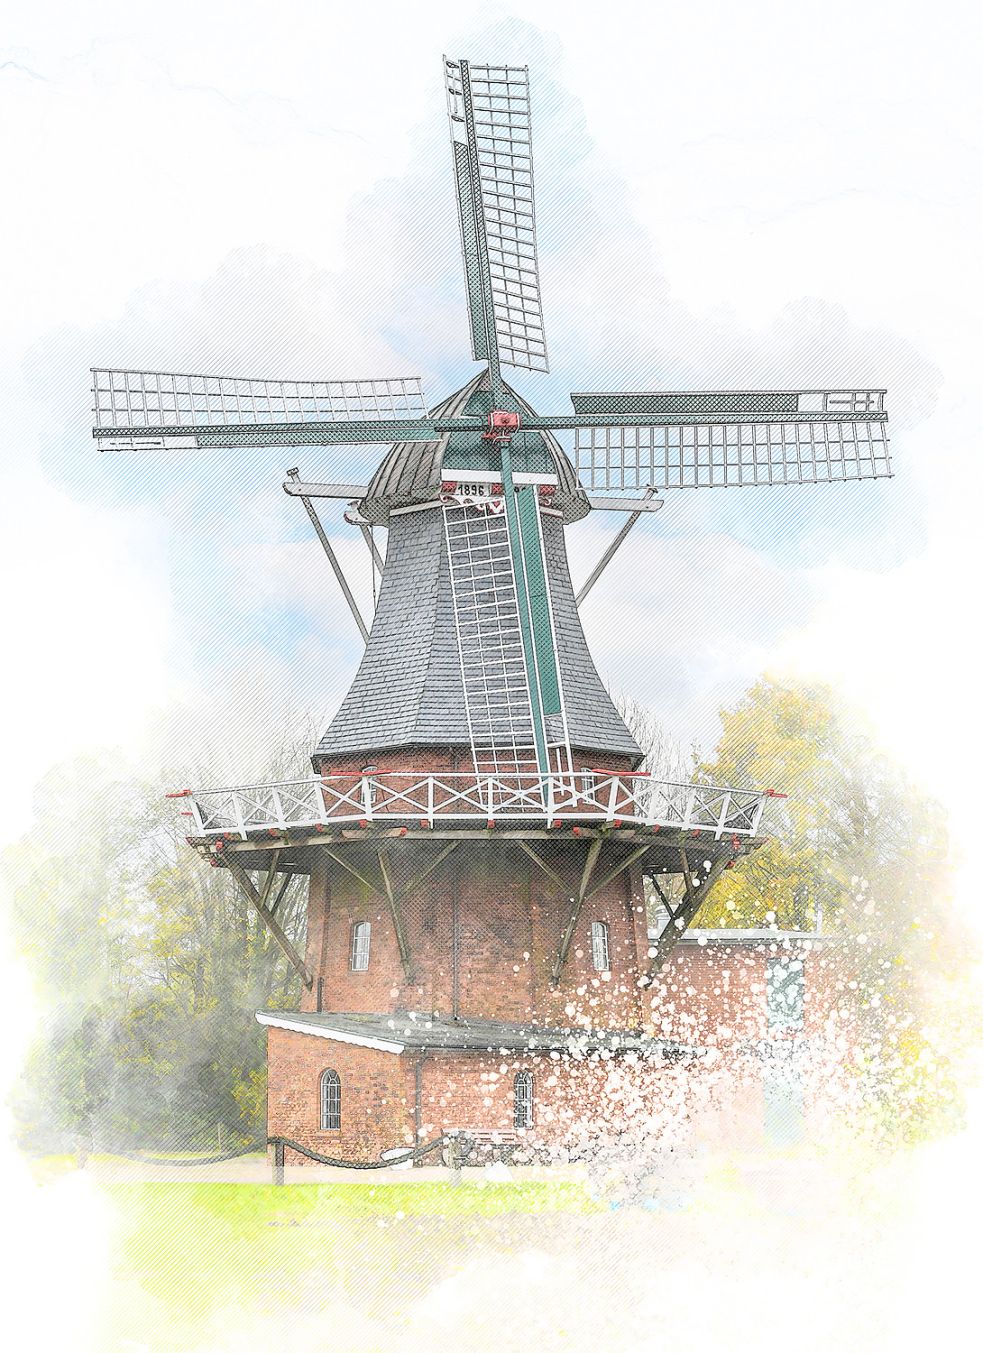 Die Mühle in Leezdorf ist mehr als 120 Jahre alt. Foto: Ortgies/Gestaltung: Will